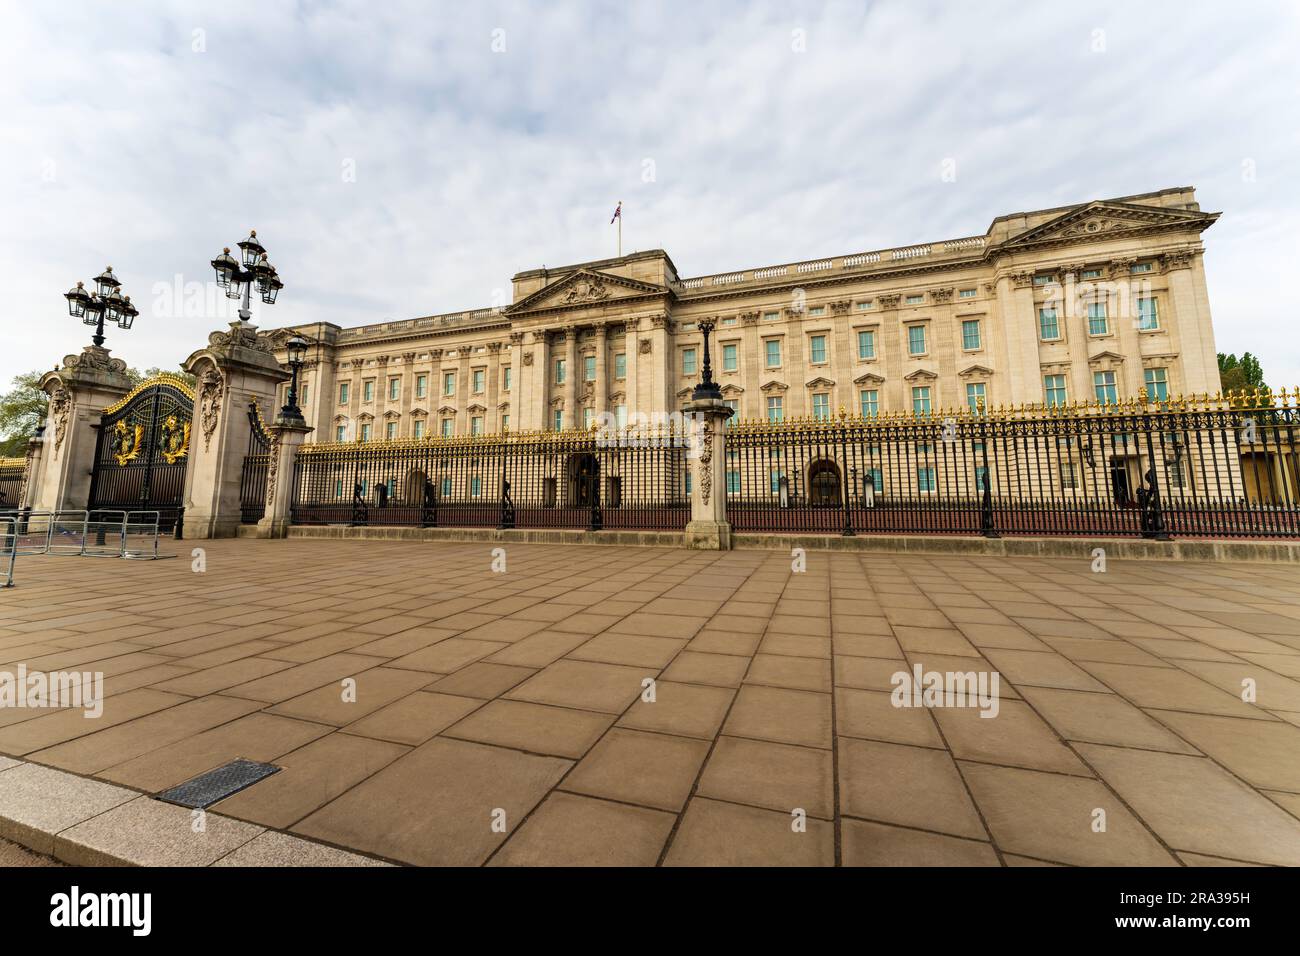 Buckingham Palace, symbole de la monarchie britannique et demeure des rois, des reines et des membres de la famille royale. Pas de gens, la semaine du couronnement du roi Charles II. Banque D'Images